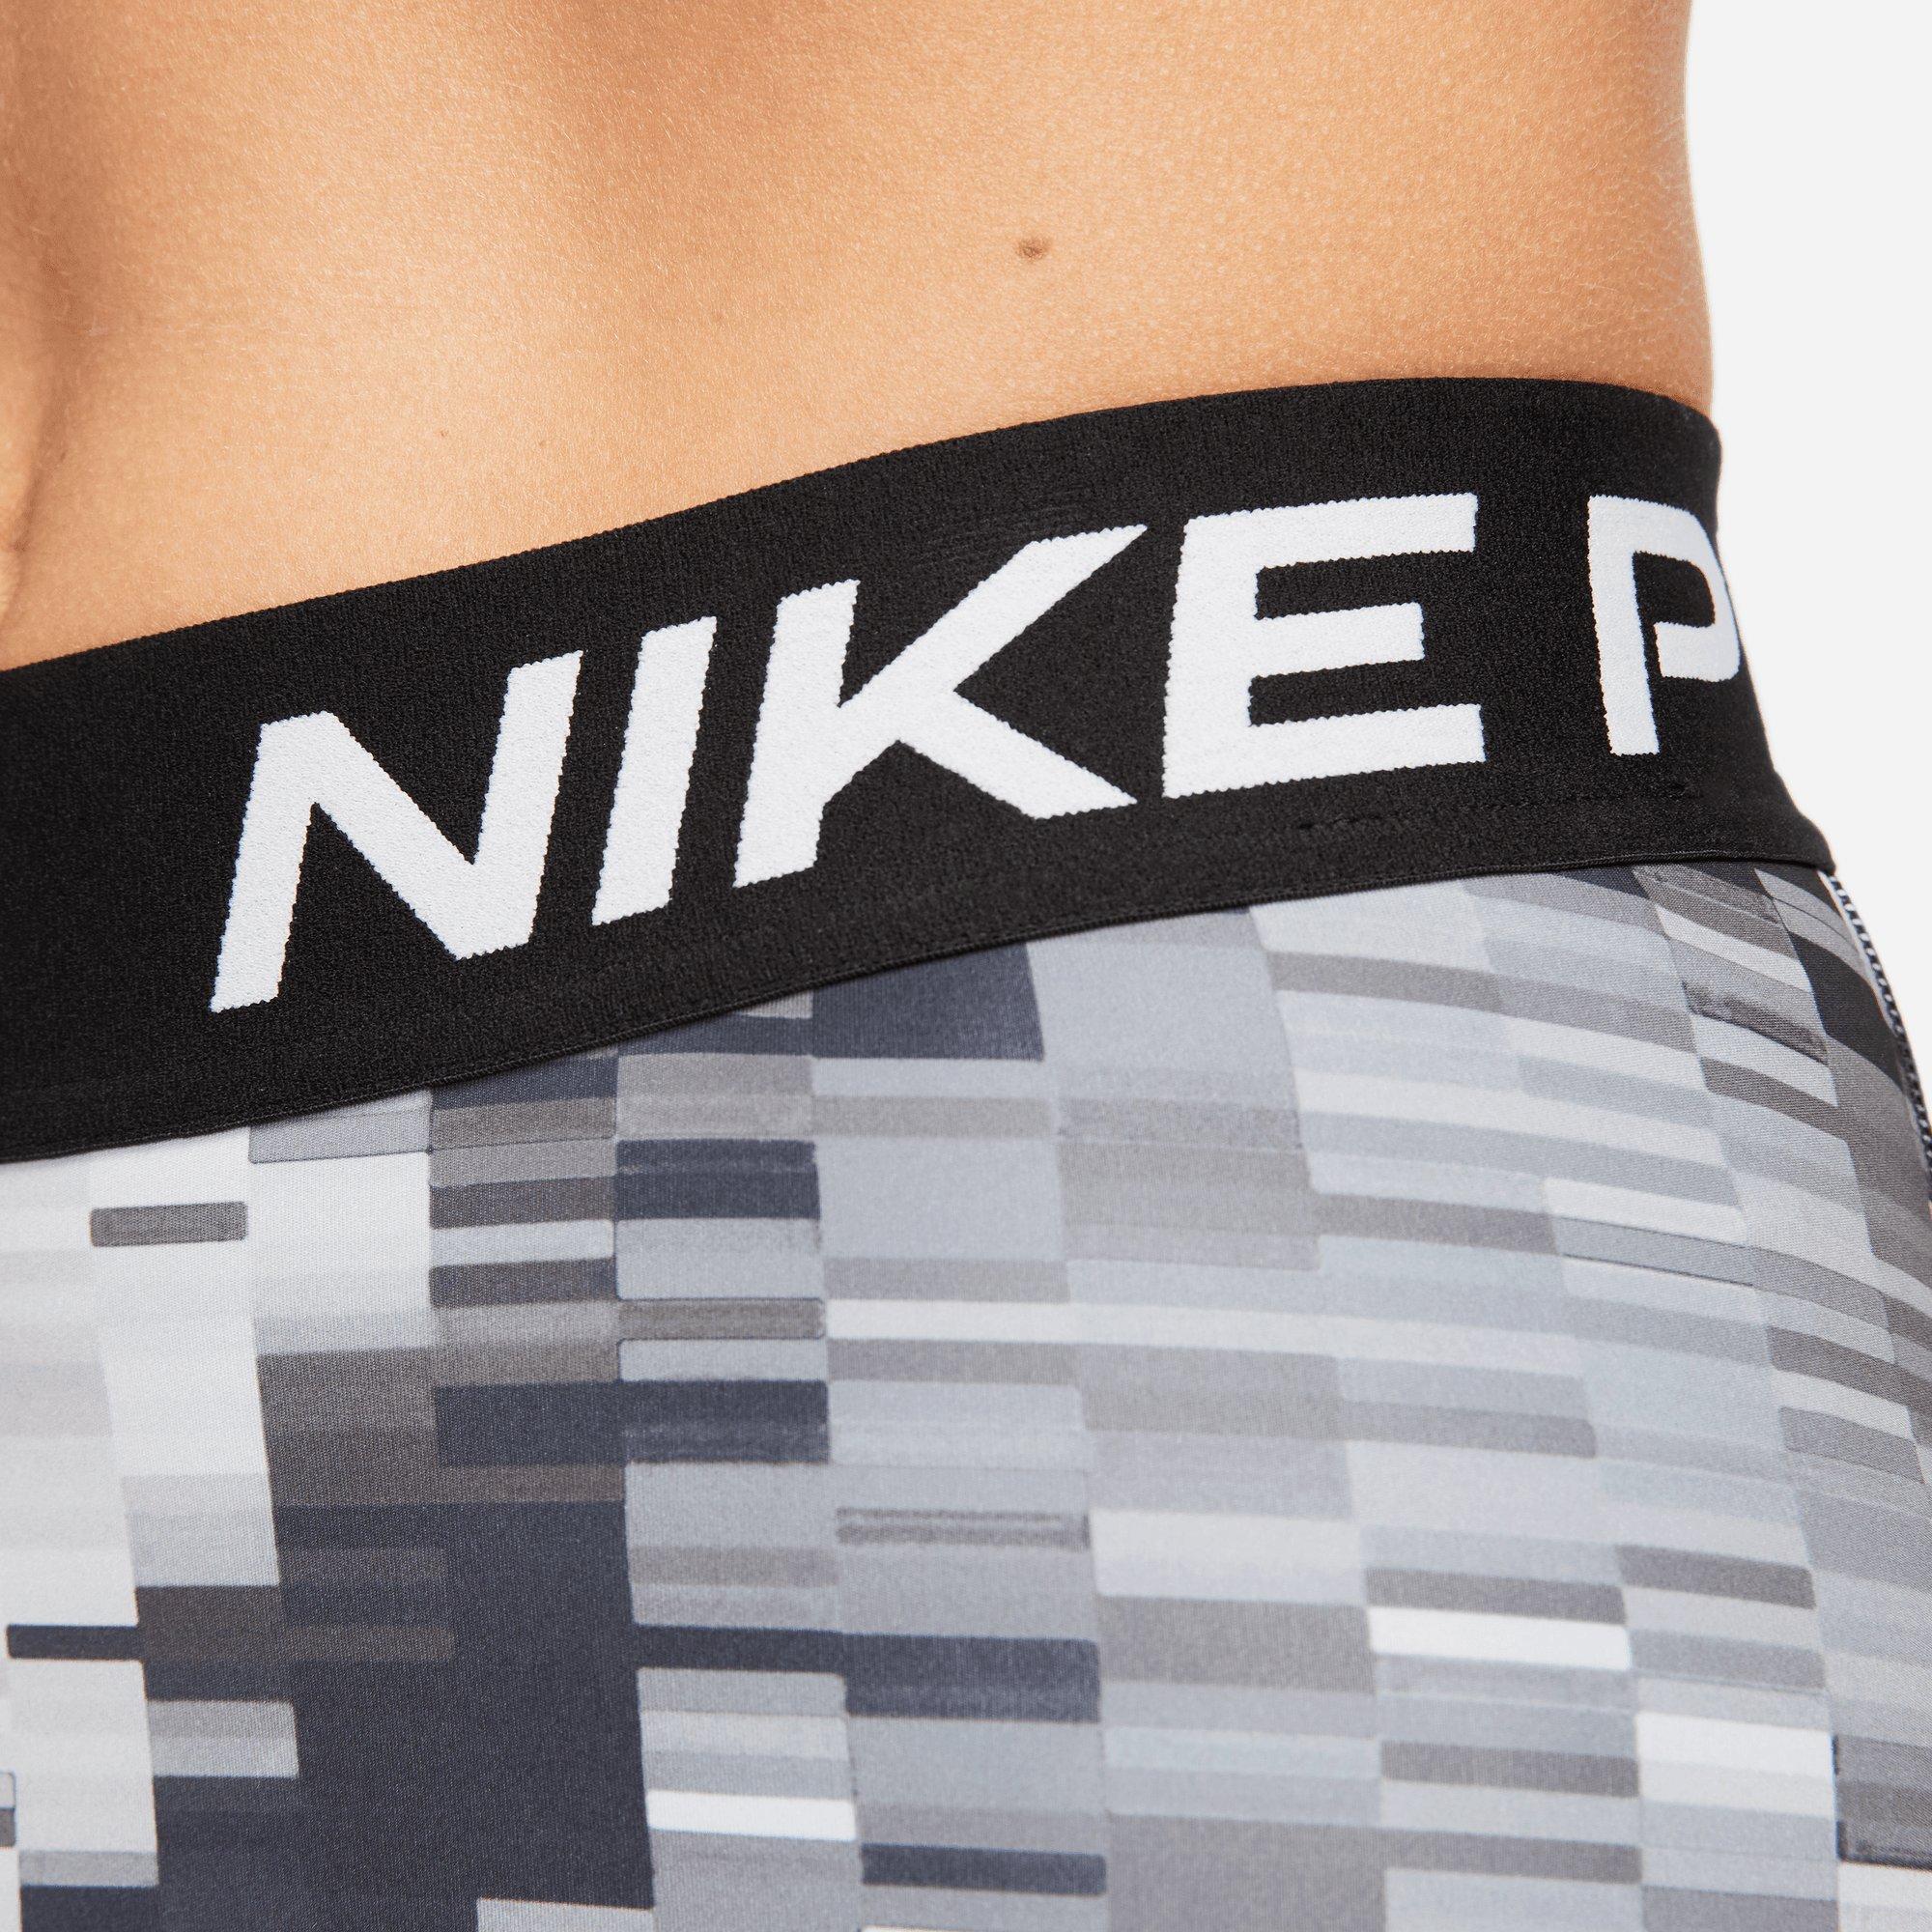 Nike Pro Training Shorts Dri-FIT Graphic - Black/White Woman